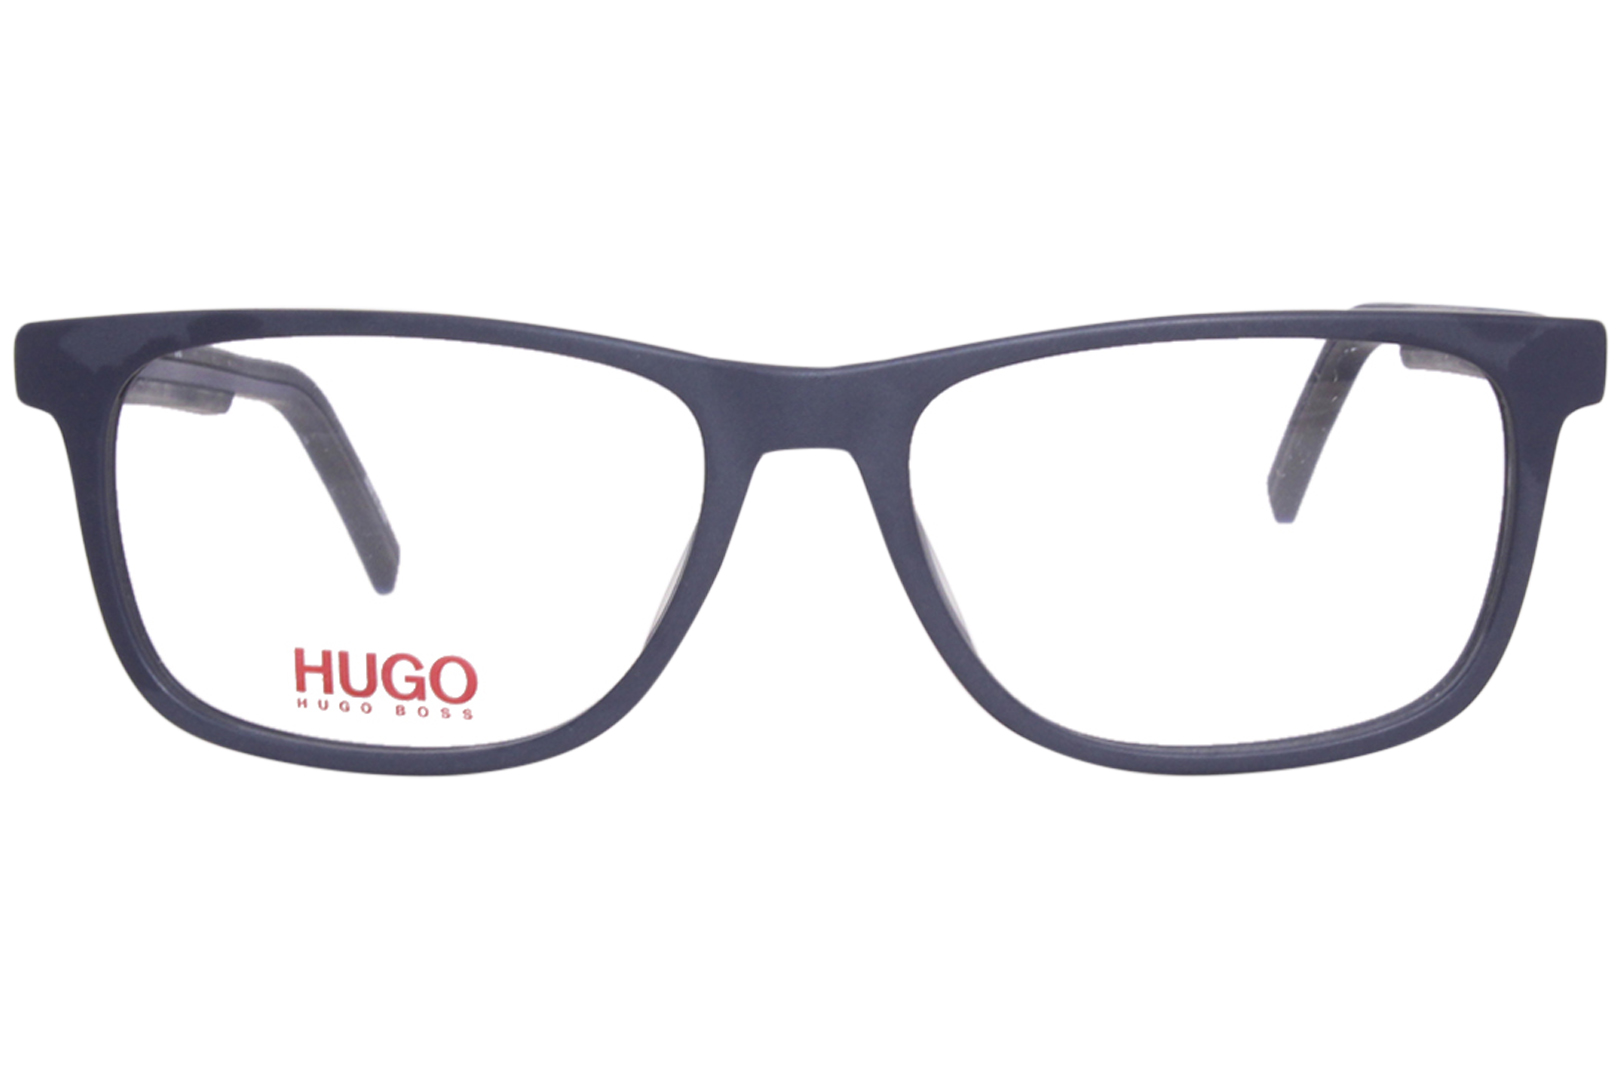 Hugo Boss HG-1048 FLL Eyeglasses Men's Matte Blue Full Rim Rectangle ...